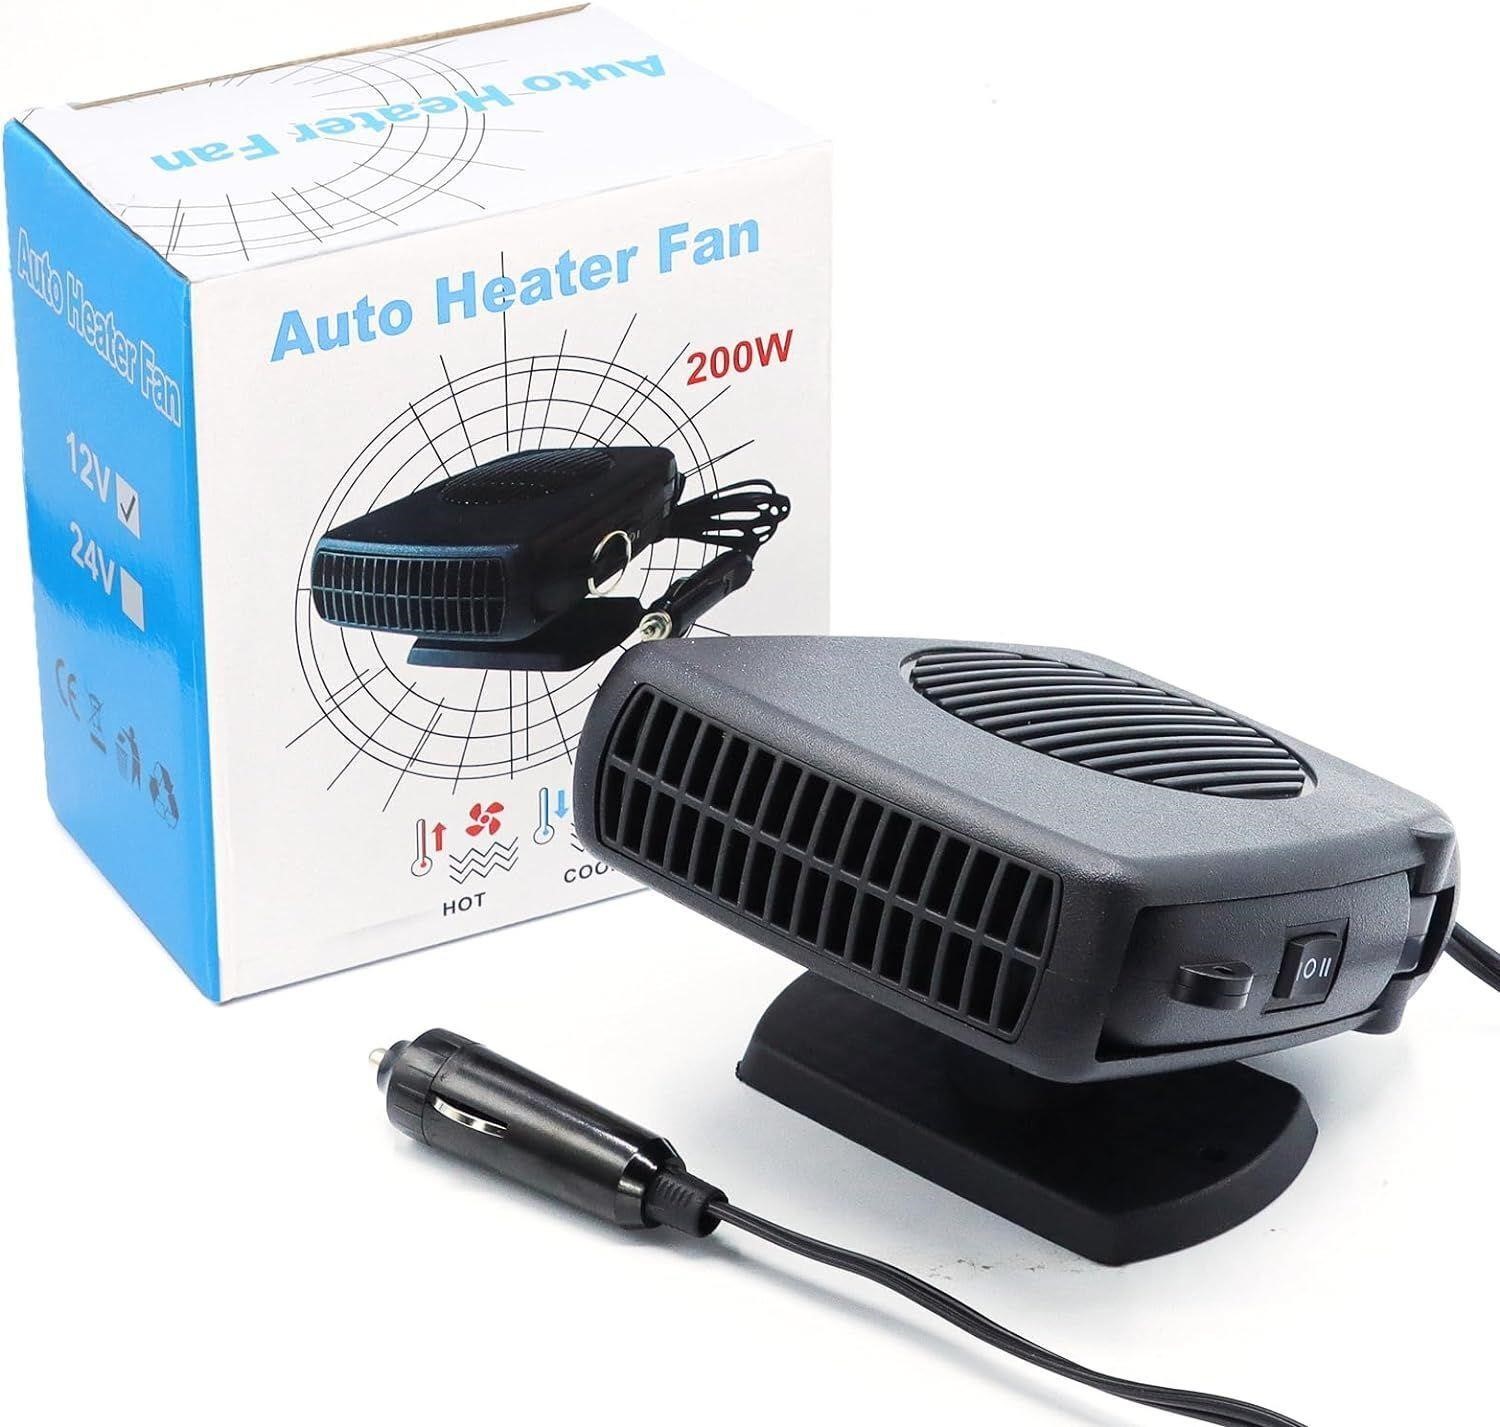 32$-Auto Heater Fan